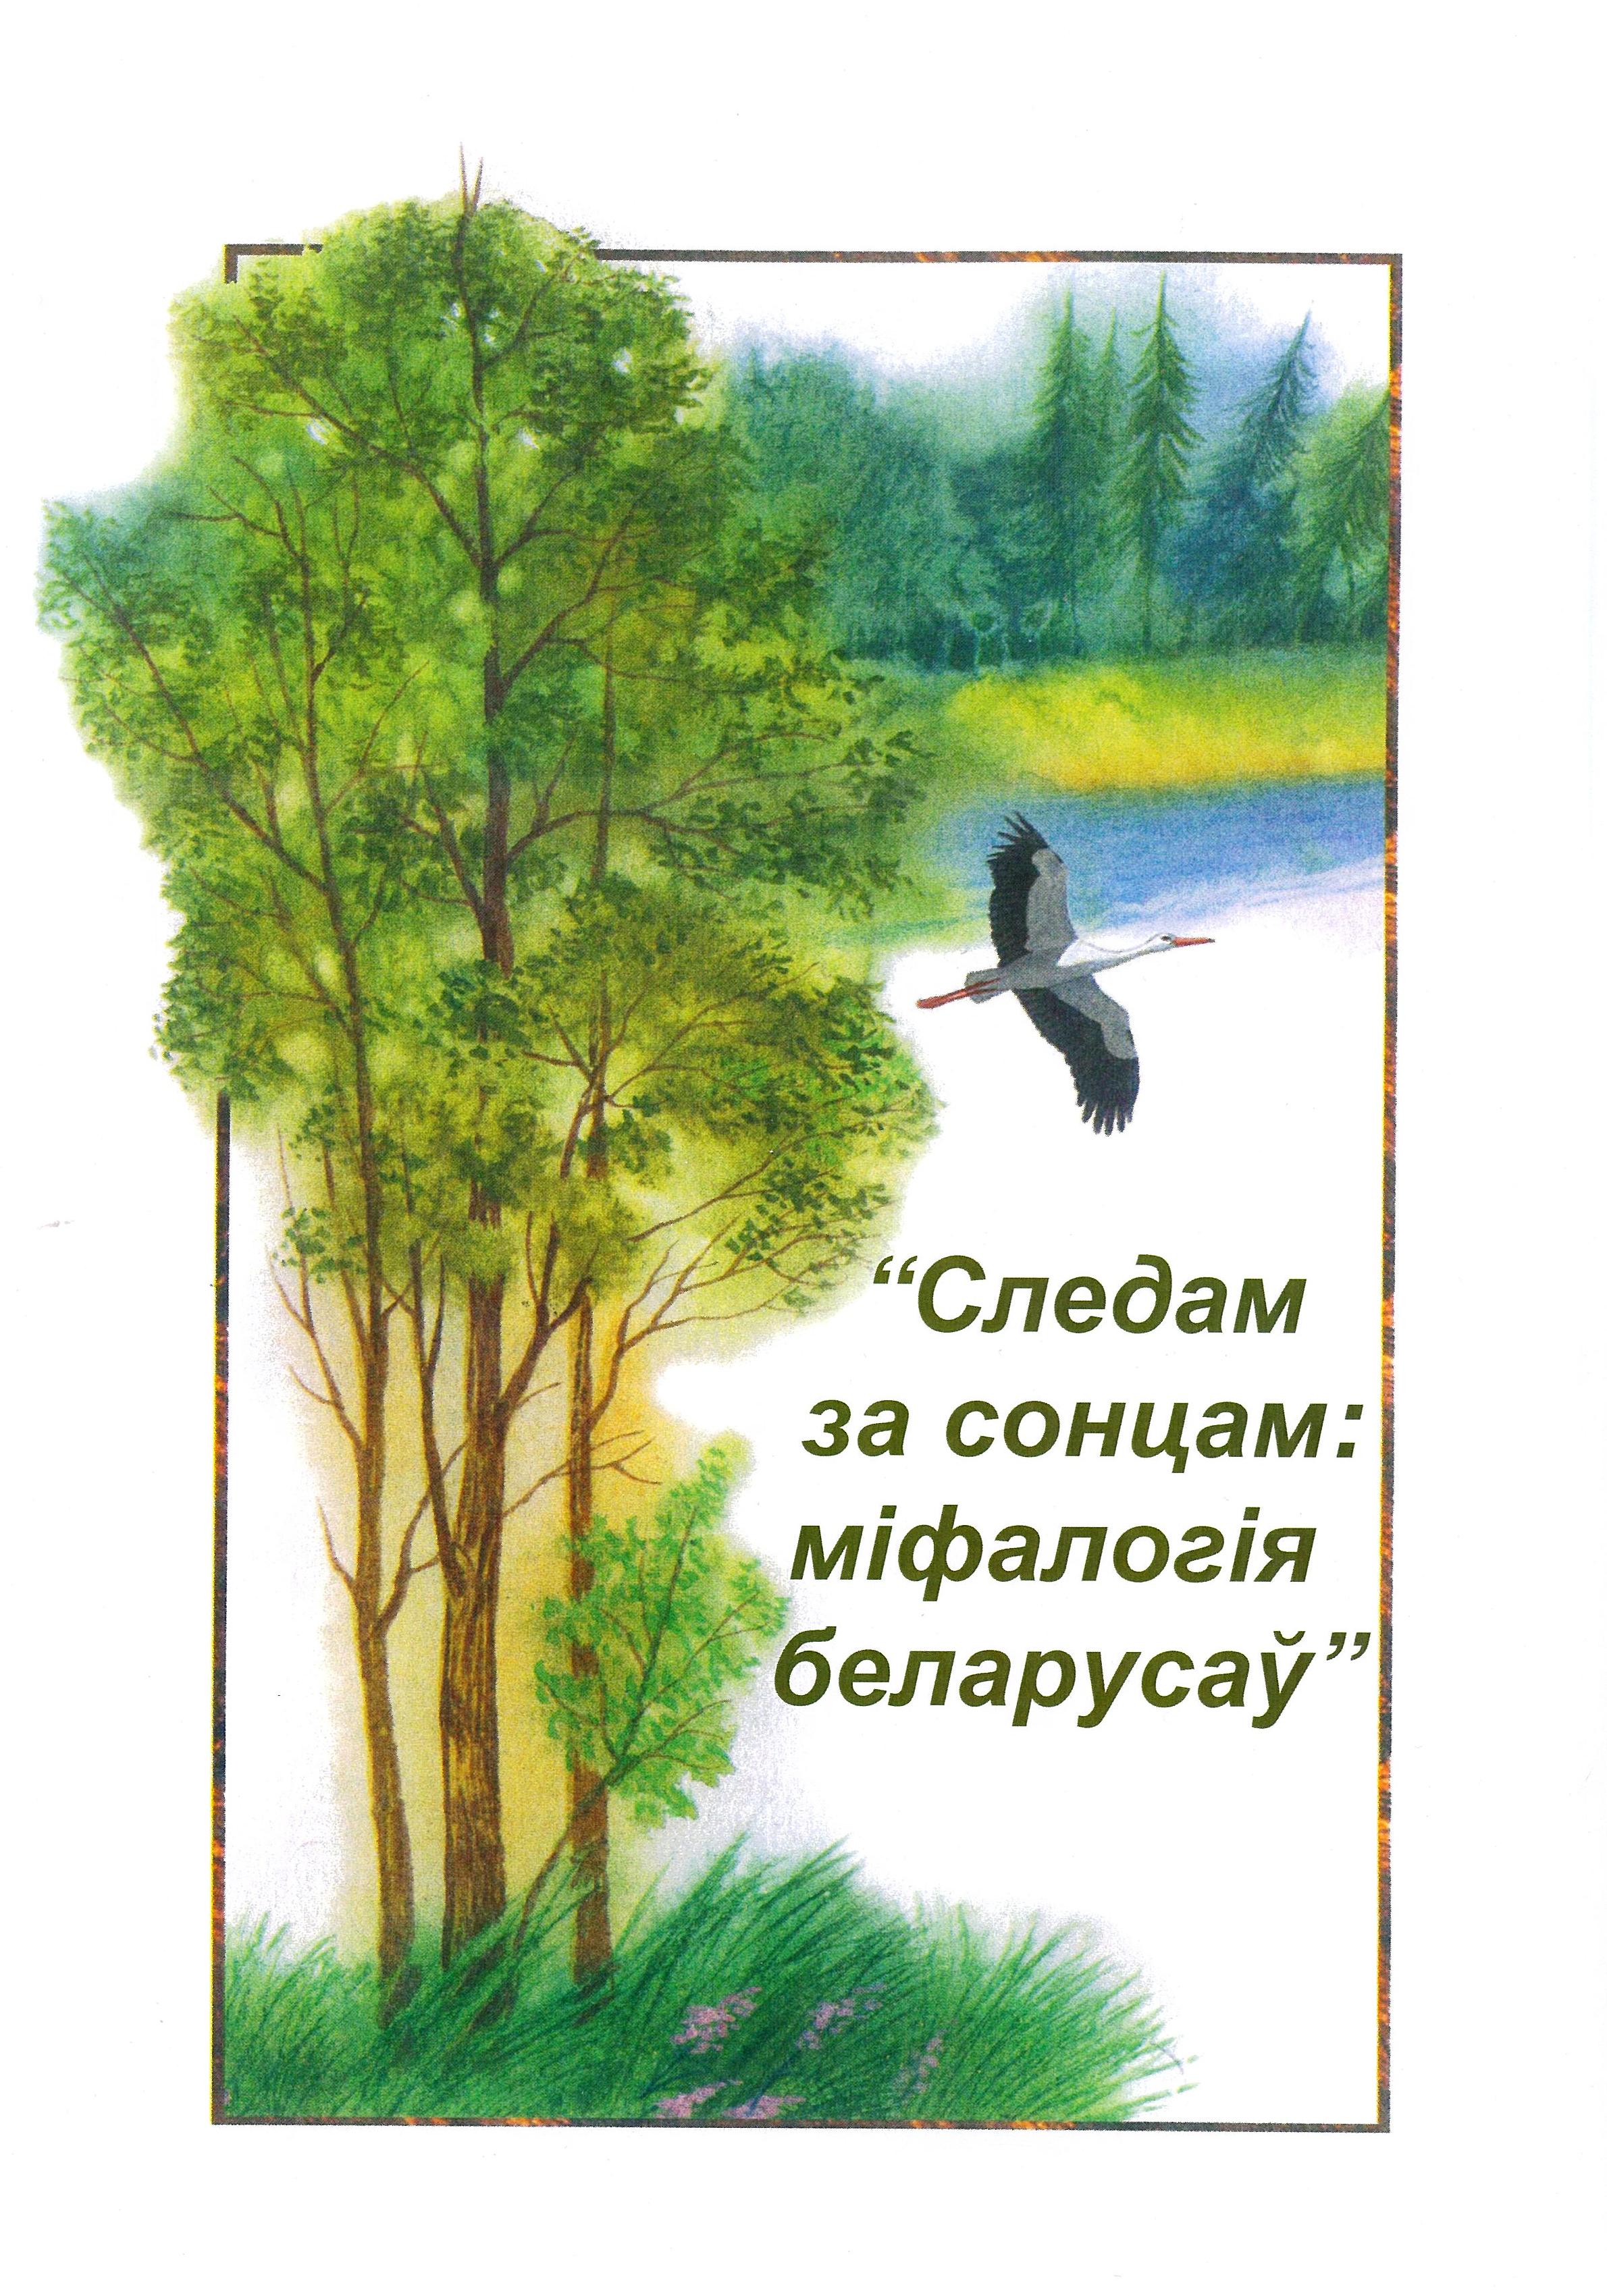 Следам за сонцам: міфалогія беларусаў